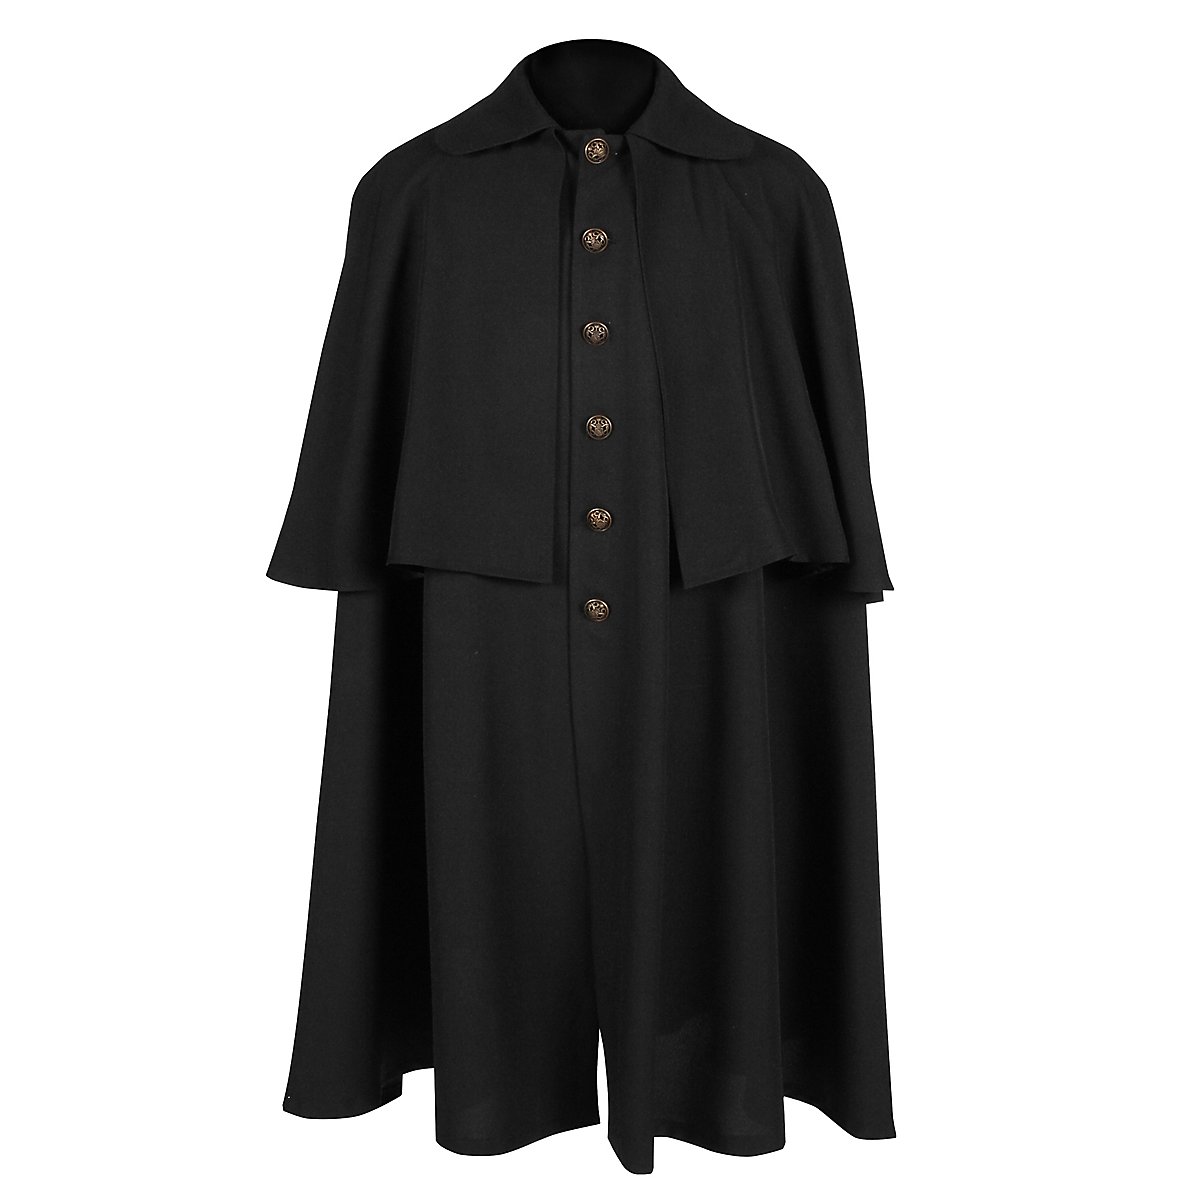 Coachman coat black - andracor.com